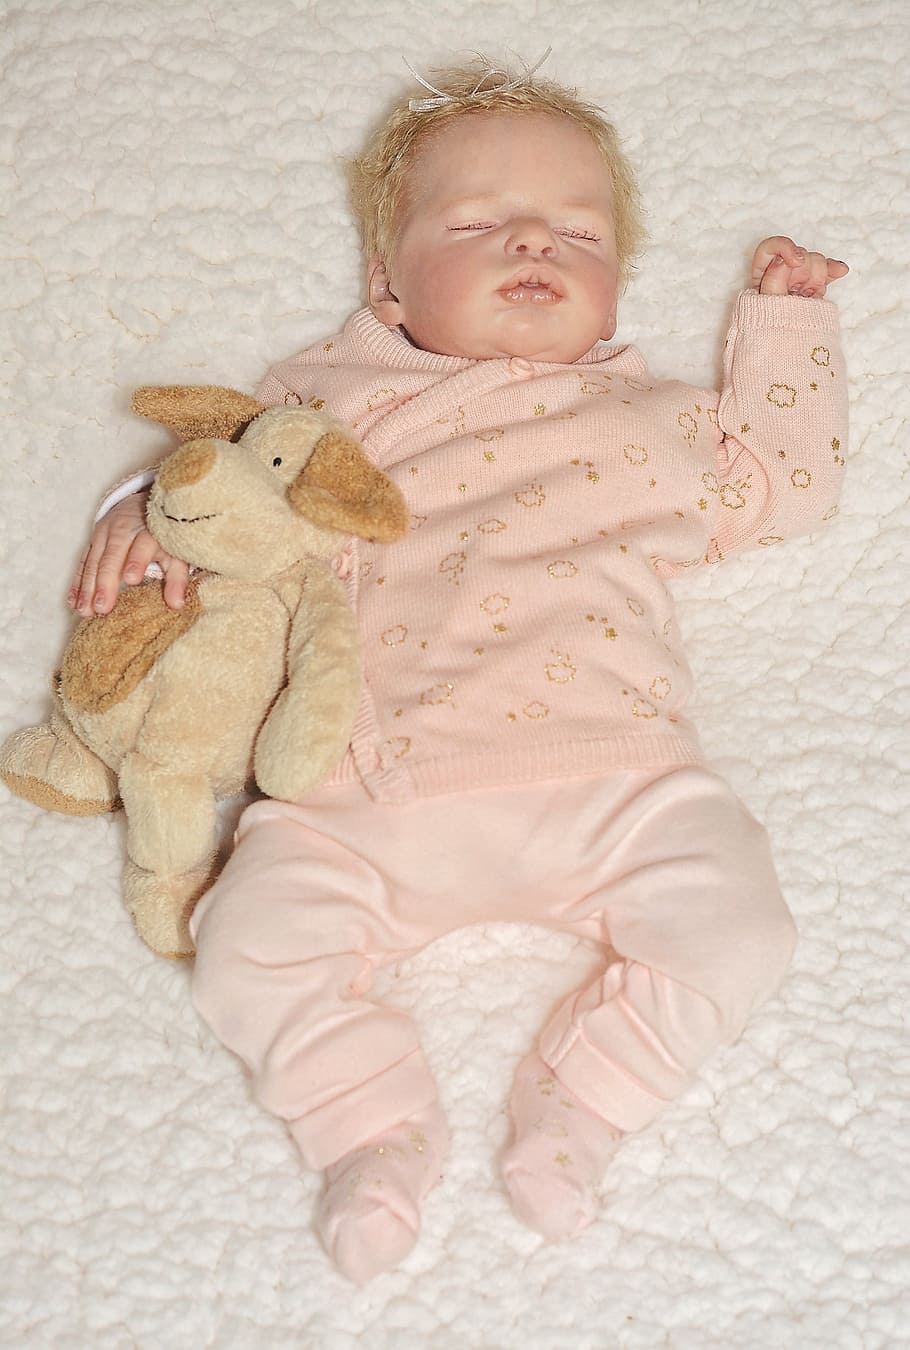 boneka, boneka bayi, boneka artis, bayi, gadis, perempuan, kecil, manis, sedang tidur, damai